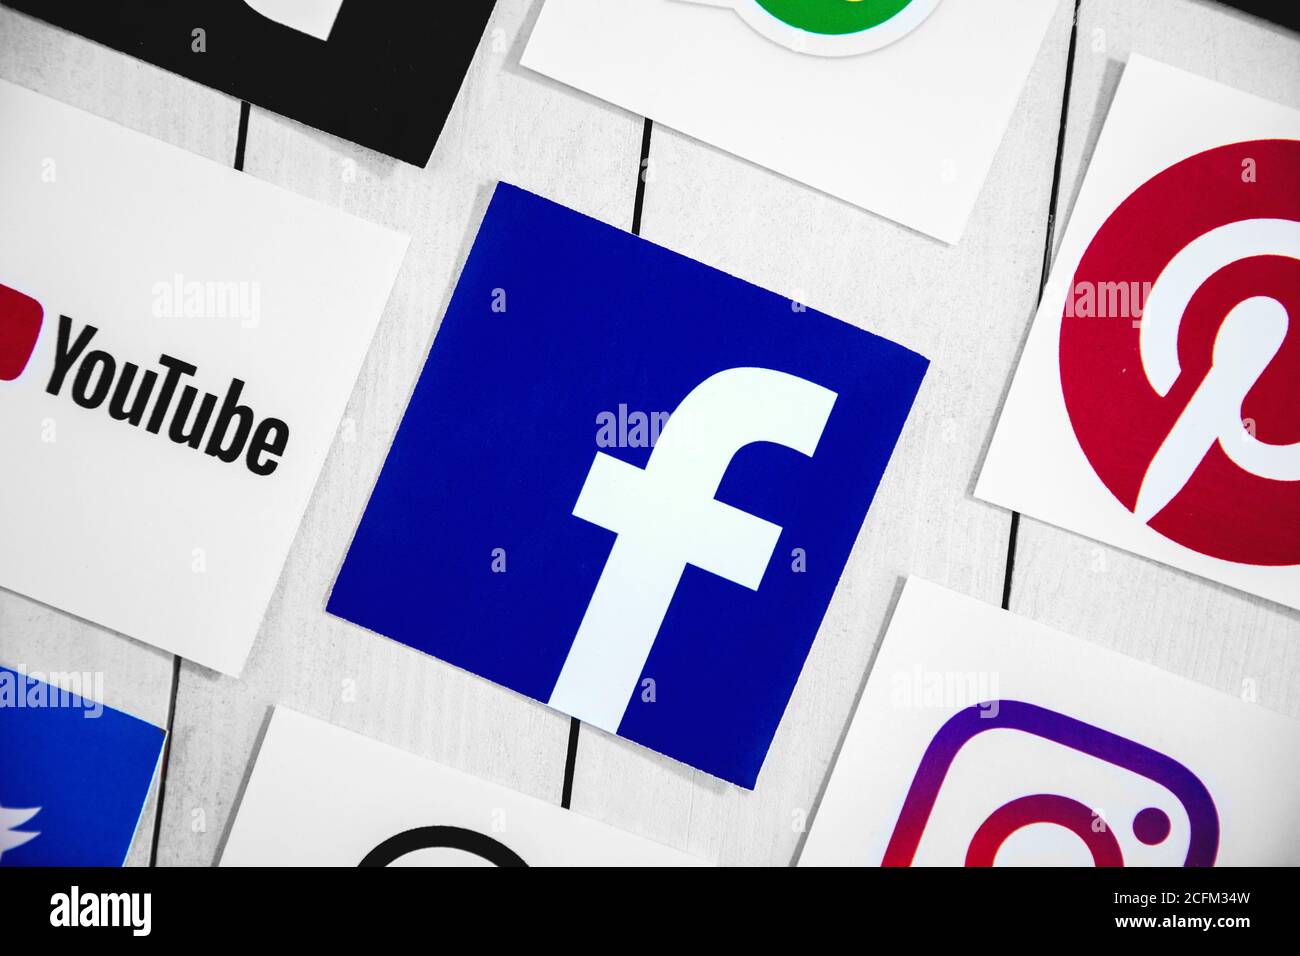 WROCLAW, POLOGNE - 29 août 2020 : symboles des médias sociaux avec logo Facebook au milieu sur parquet. Facebook est un médicament social en ligne américain Banque D'Images